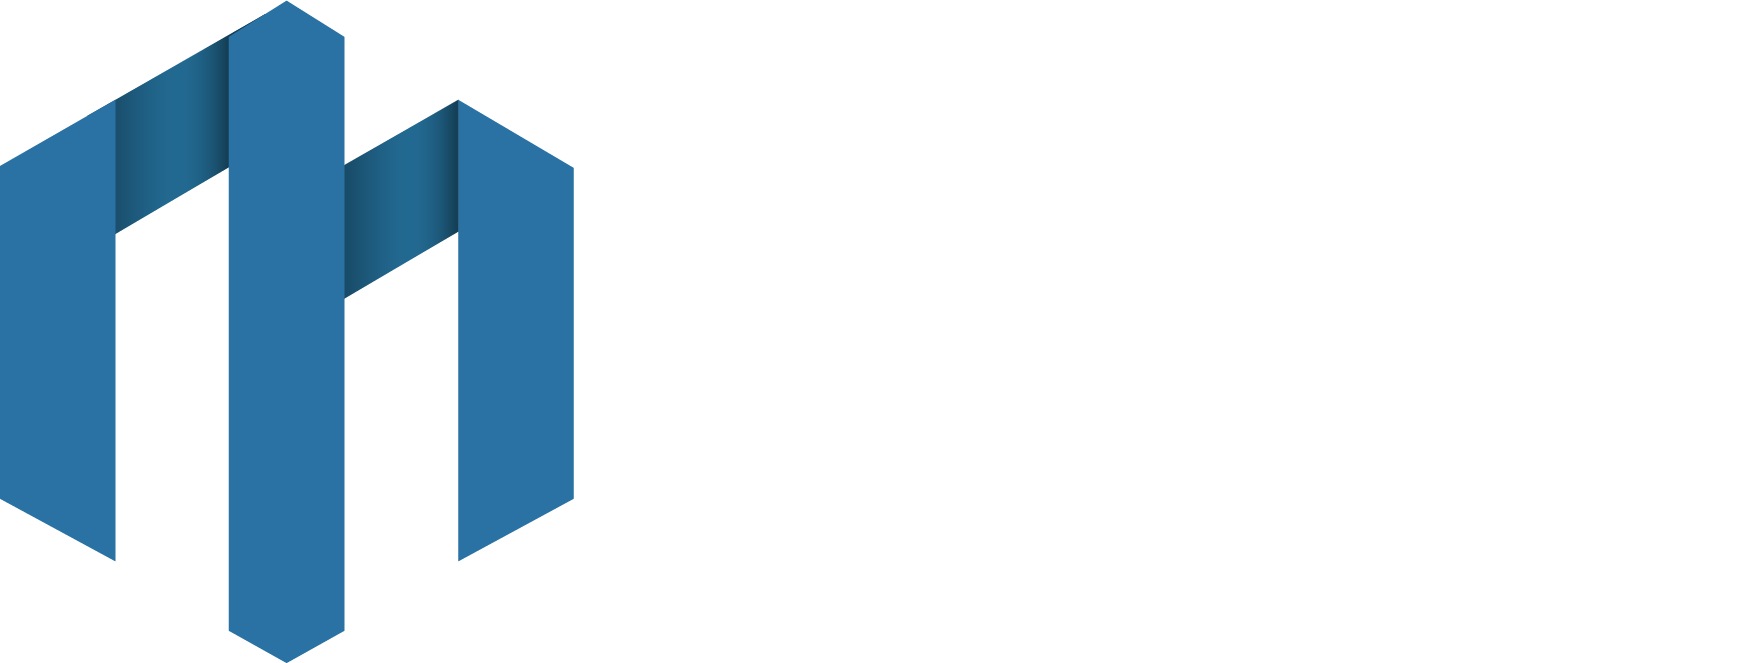 Mendoza Malpartida